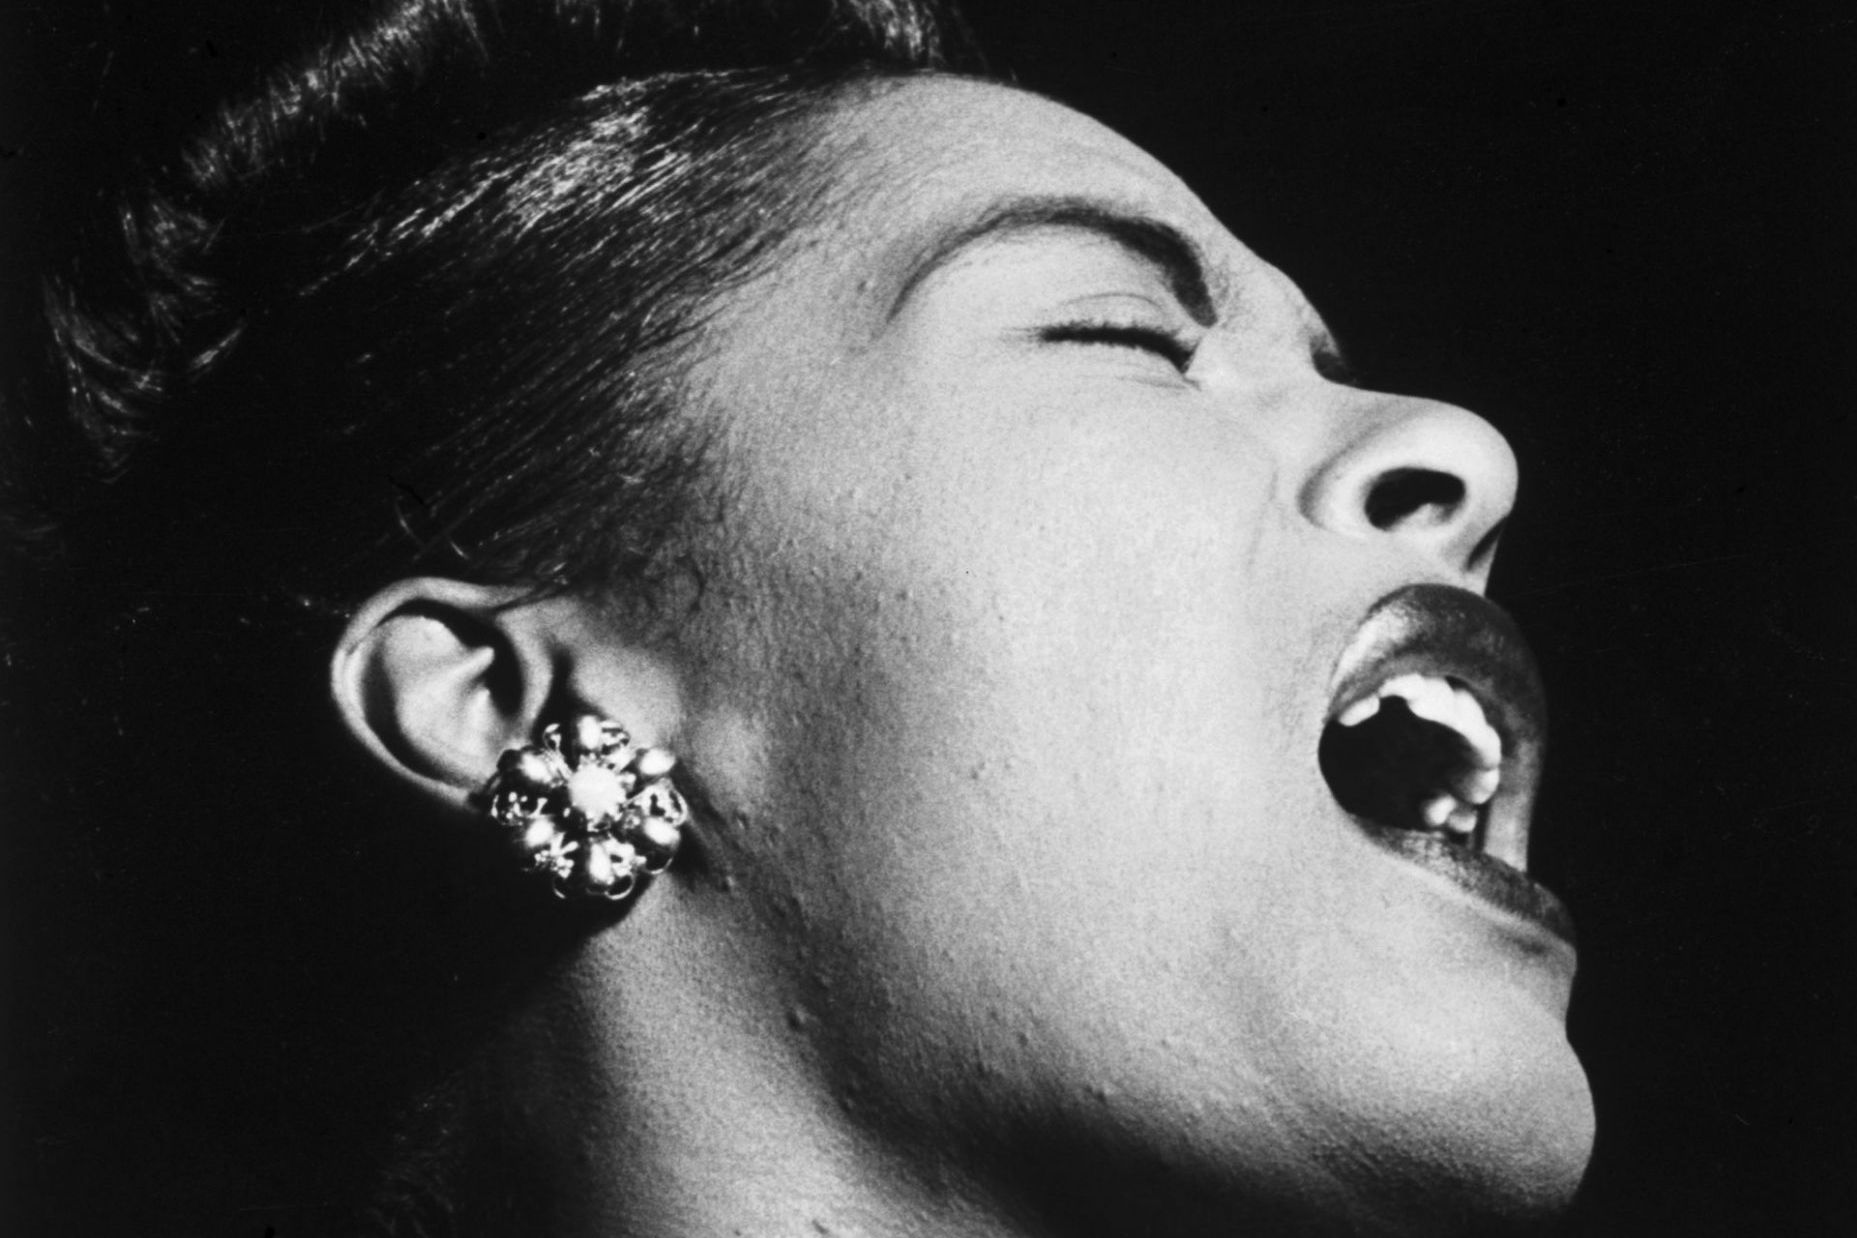 Singer Billie Holiday